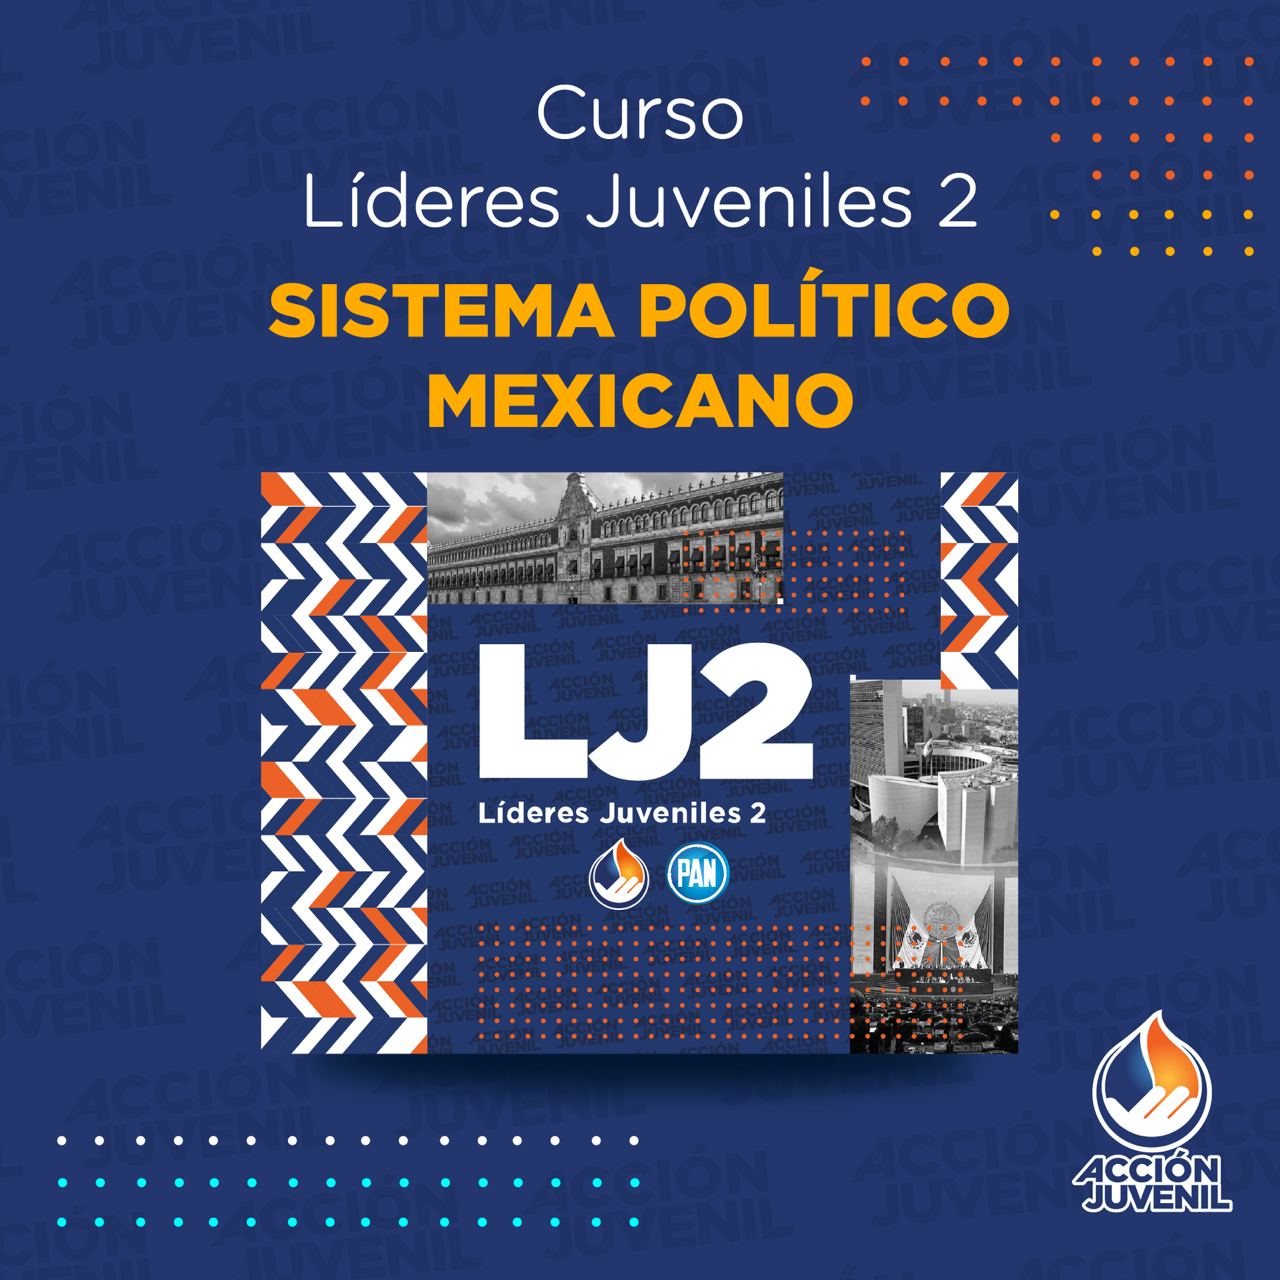 Curso Líderes Juveniles 2 Sistema Político Mexicano Naucalpan, MEX 09/07/22